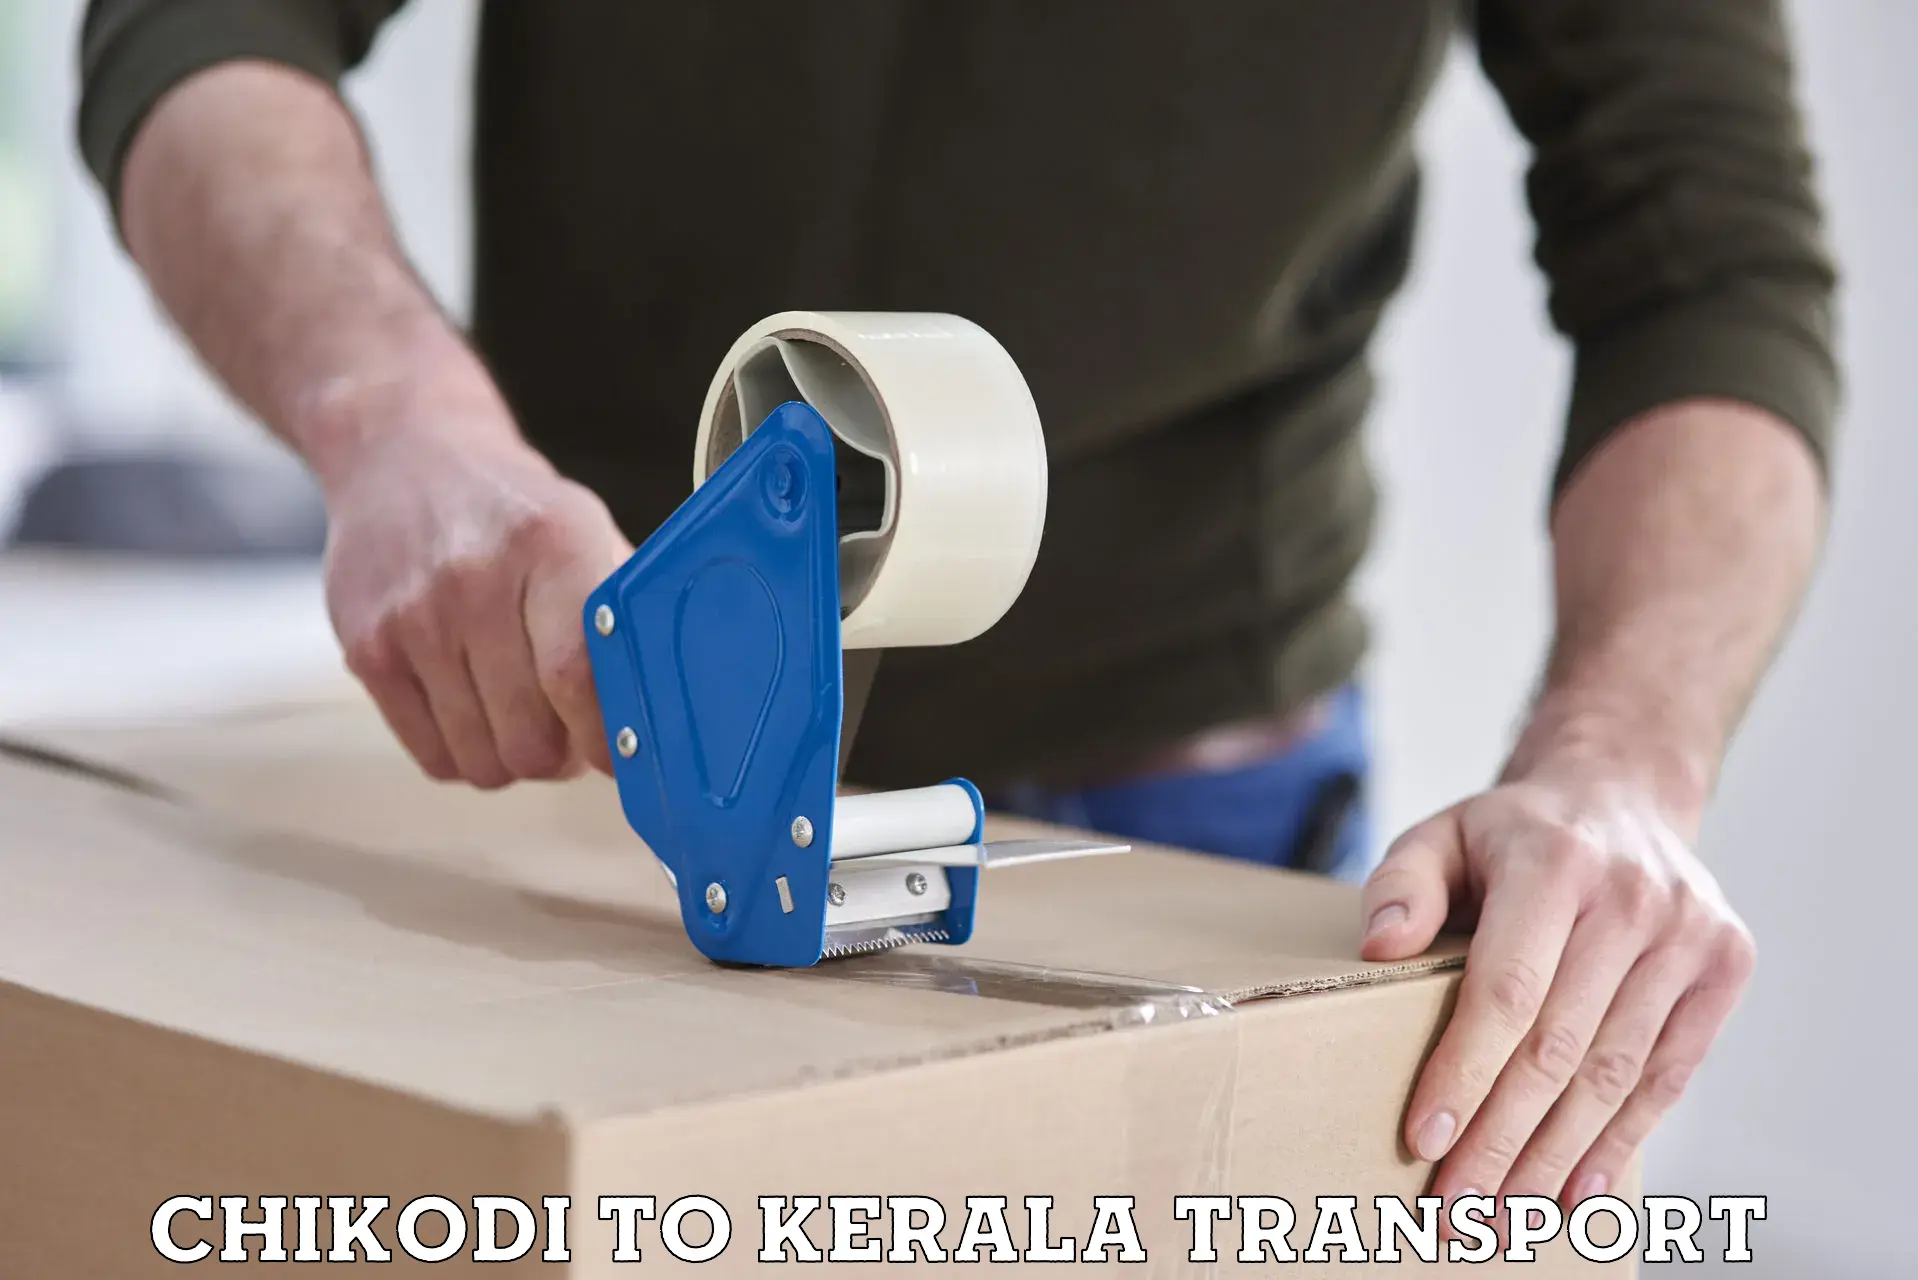 Door to door transport services Chikodi to Kerala